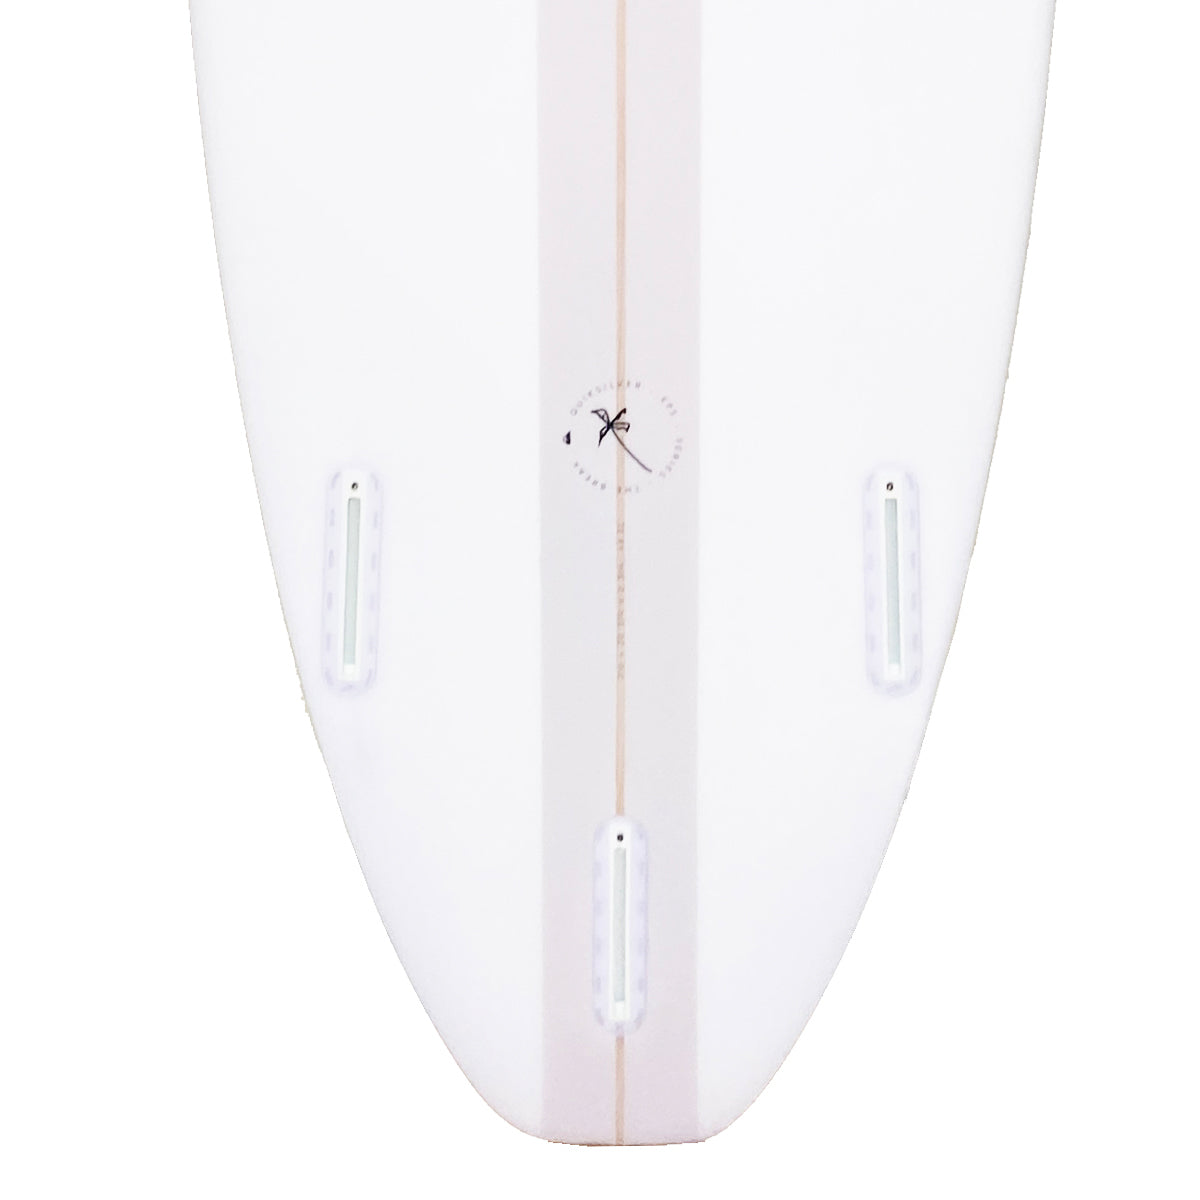 QS BREAK 8'0 SURFBOARD